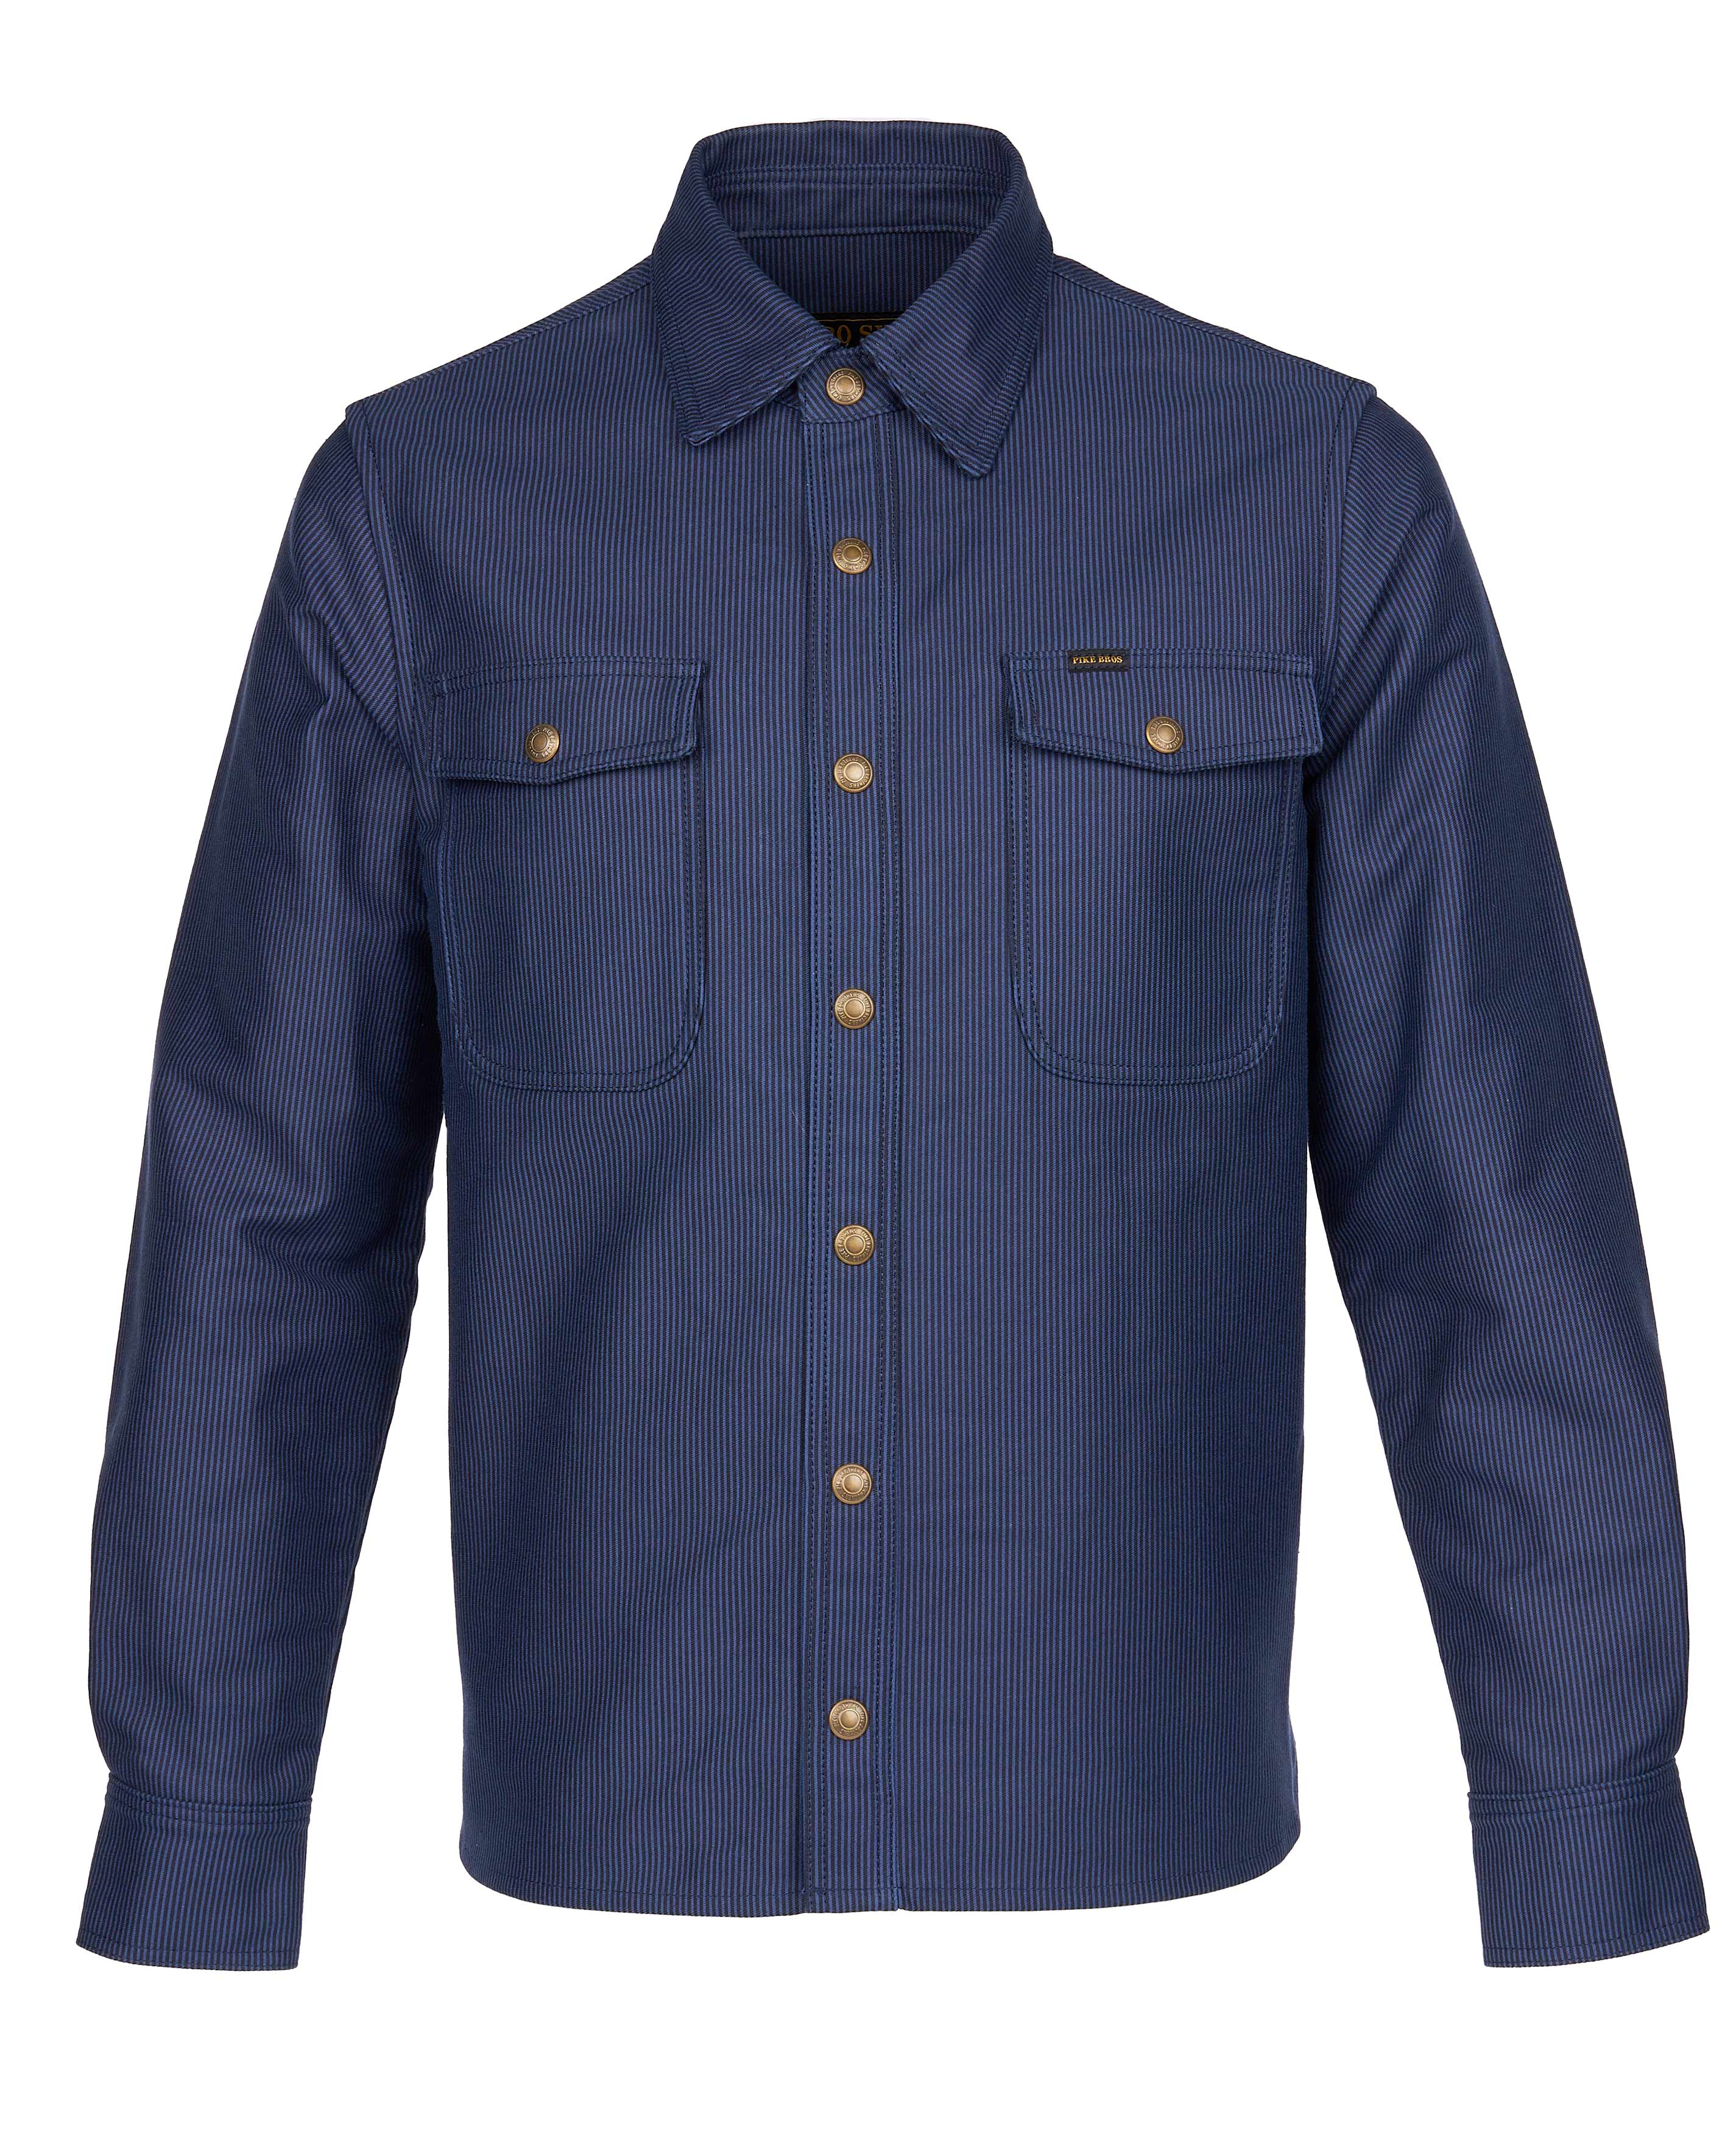 1943 CPO Shirt Hamburg blue